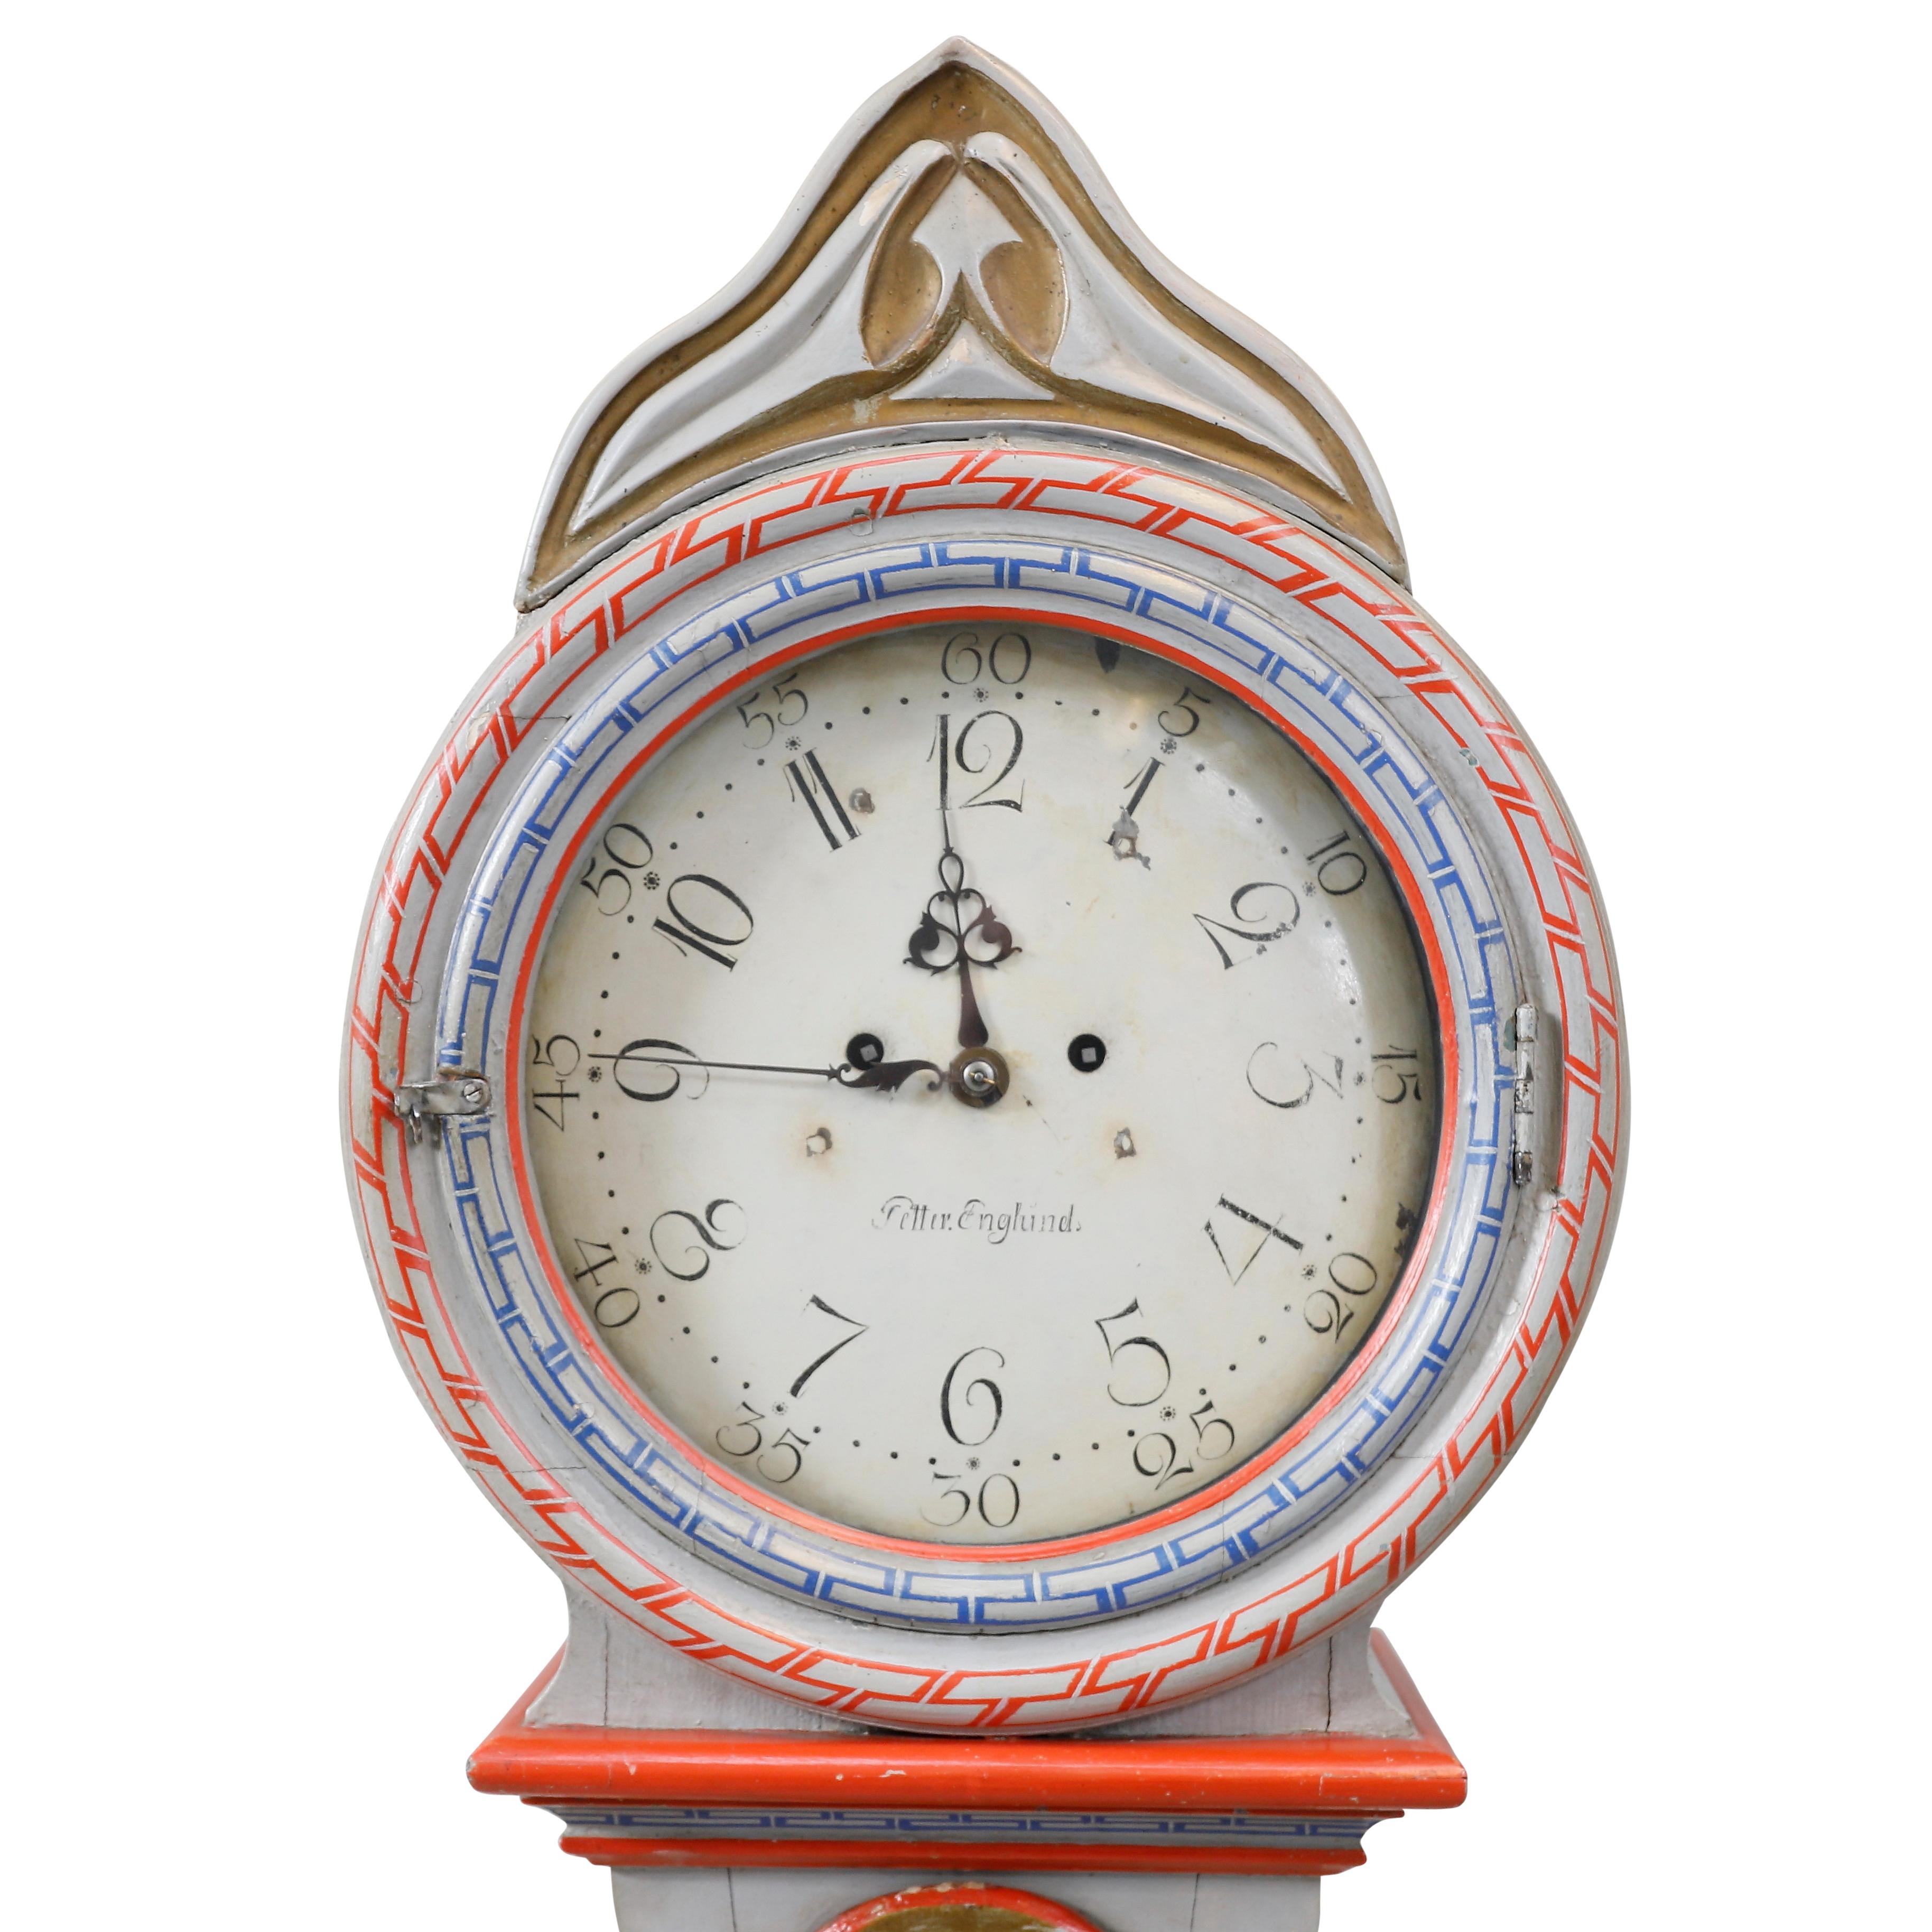 Ancienne horloge suédoise Mora antiques du 18ème siècle avec des détails peints à la main en Chinoiserie. Le cadran de cette horloge porte le nom de son fabricant, Peter Englund. 

Largeur : 58.5cm / 23